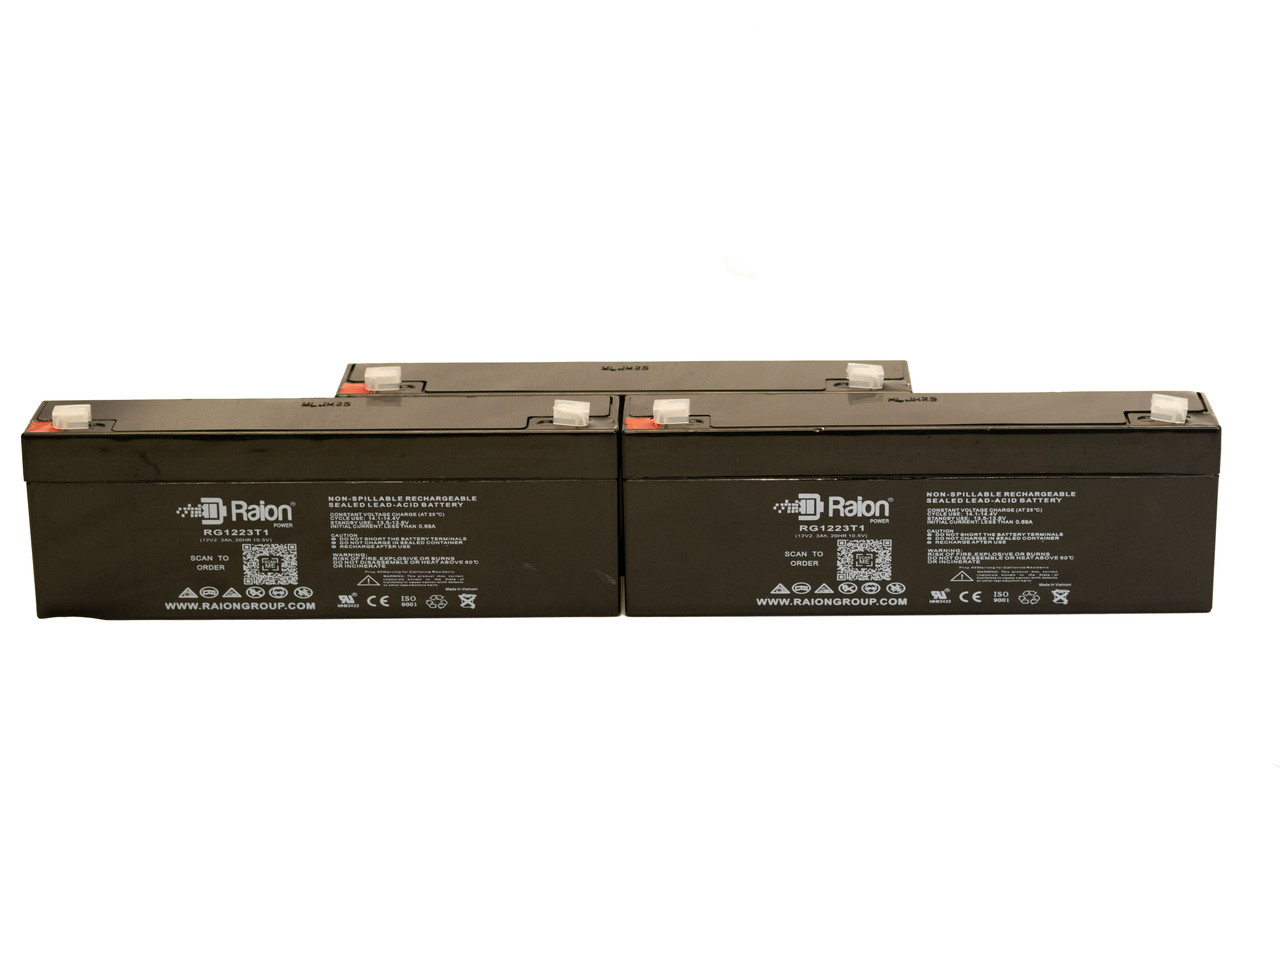 Raion Power 12V 2.3Ah RG1223T1 Replacement Medical Battery for Fluke Biomedical Impulse 4000 - 3 Pack